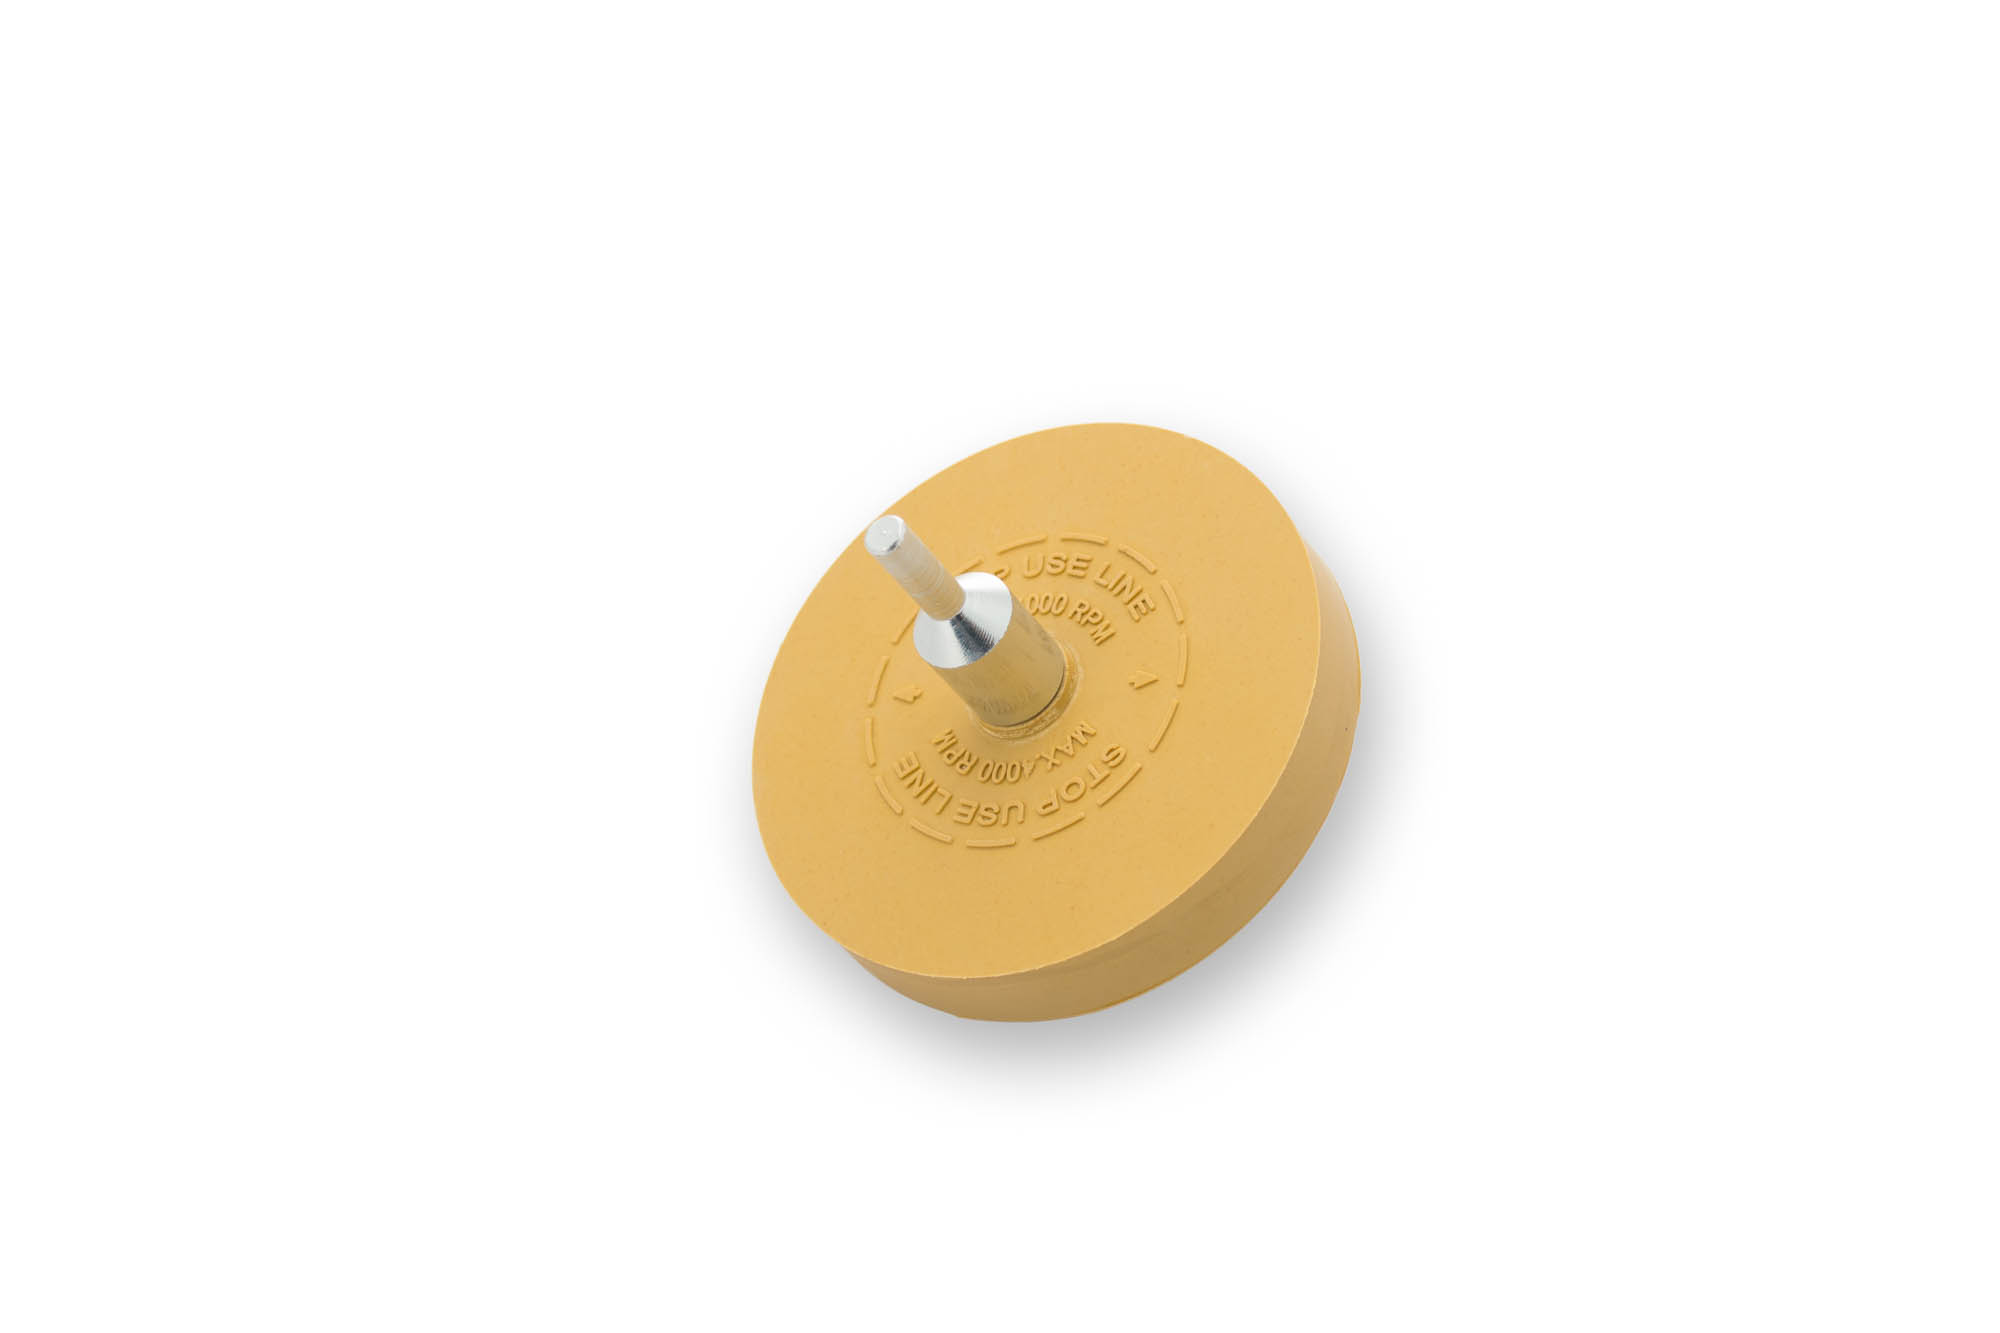 TE300 88 мм (3.5") Круг для снятия двухстороннего скотча, желтый - Flexipads Tape Erazer Wheel